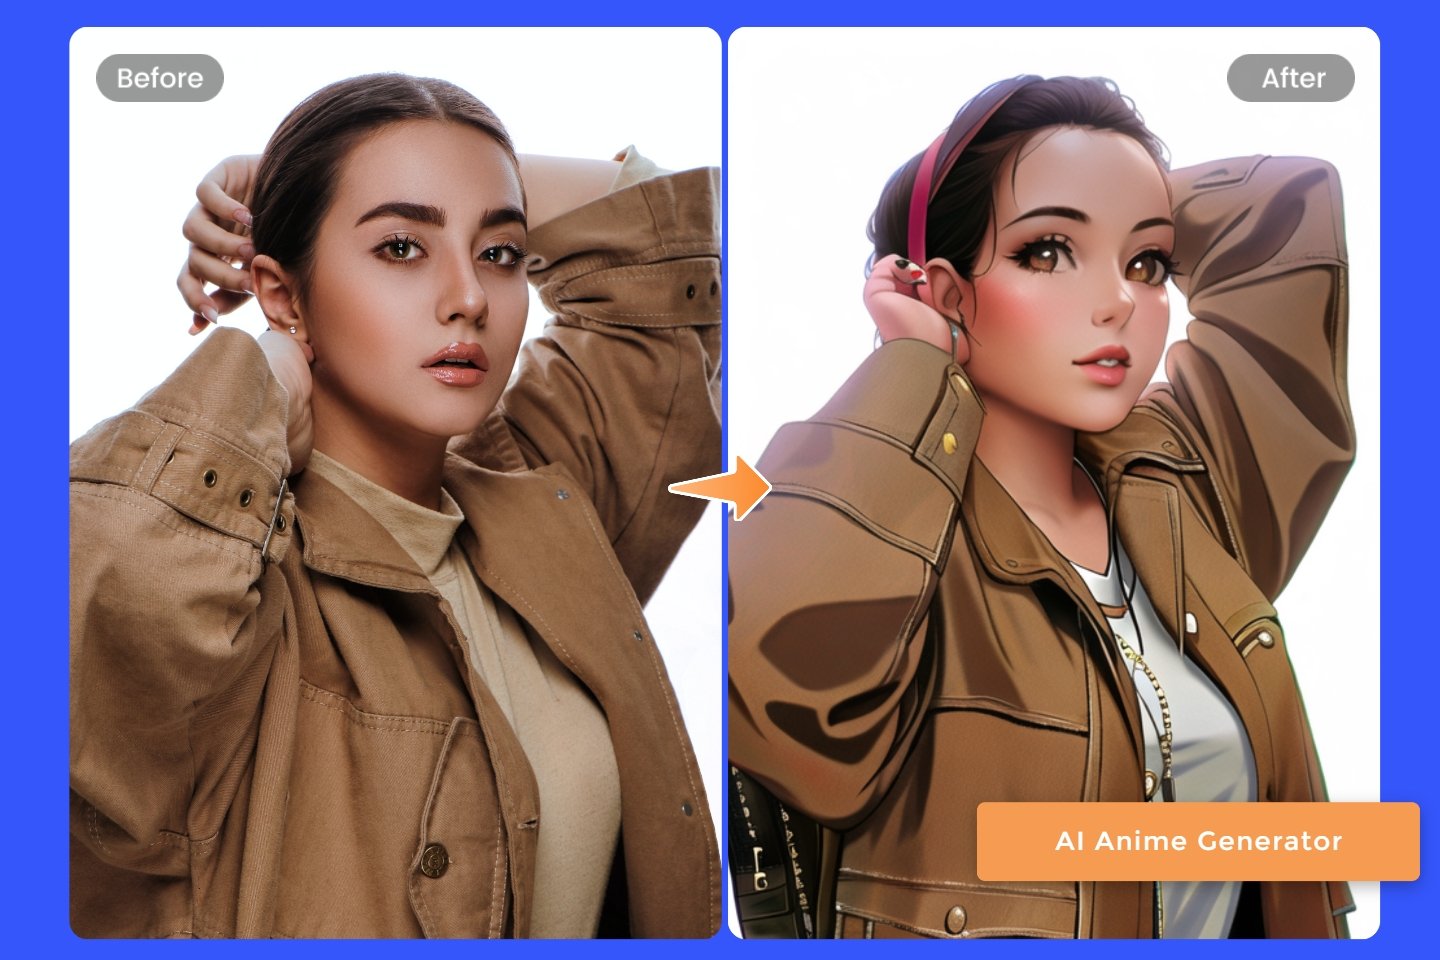 Verwandle eine weibliche Person mit dem Fotor AI Anime-Generator in Anime